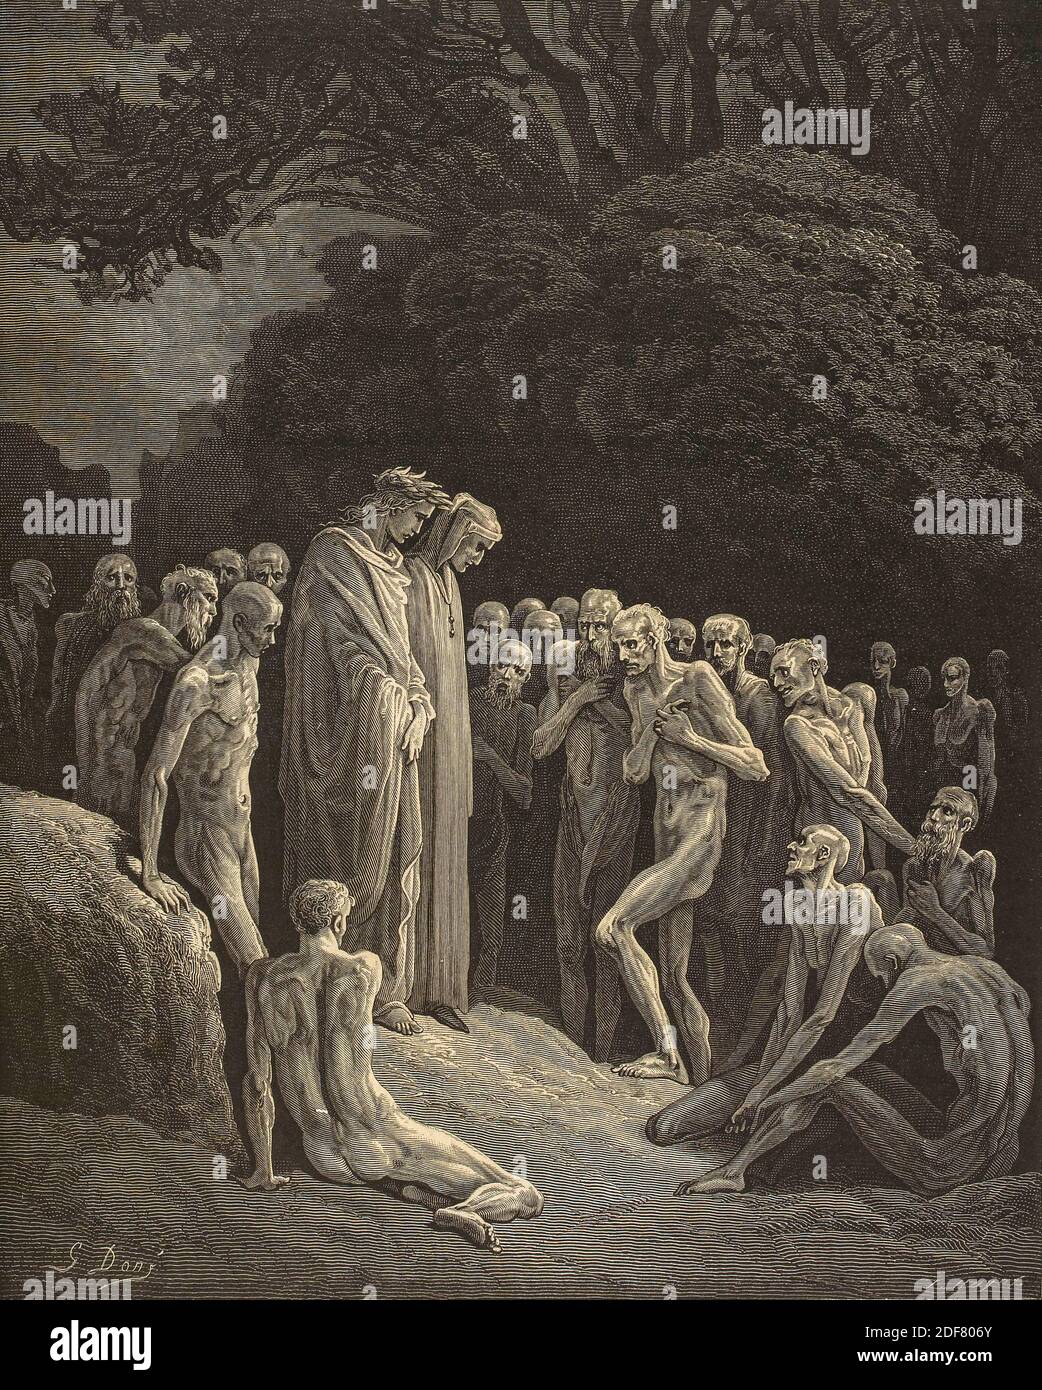 Dante - Divina Commedia - Purgatorio - Ilustración de Gustave Dorè - Canto XXIV - codicioso Foto de stock